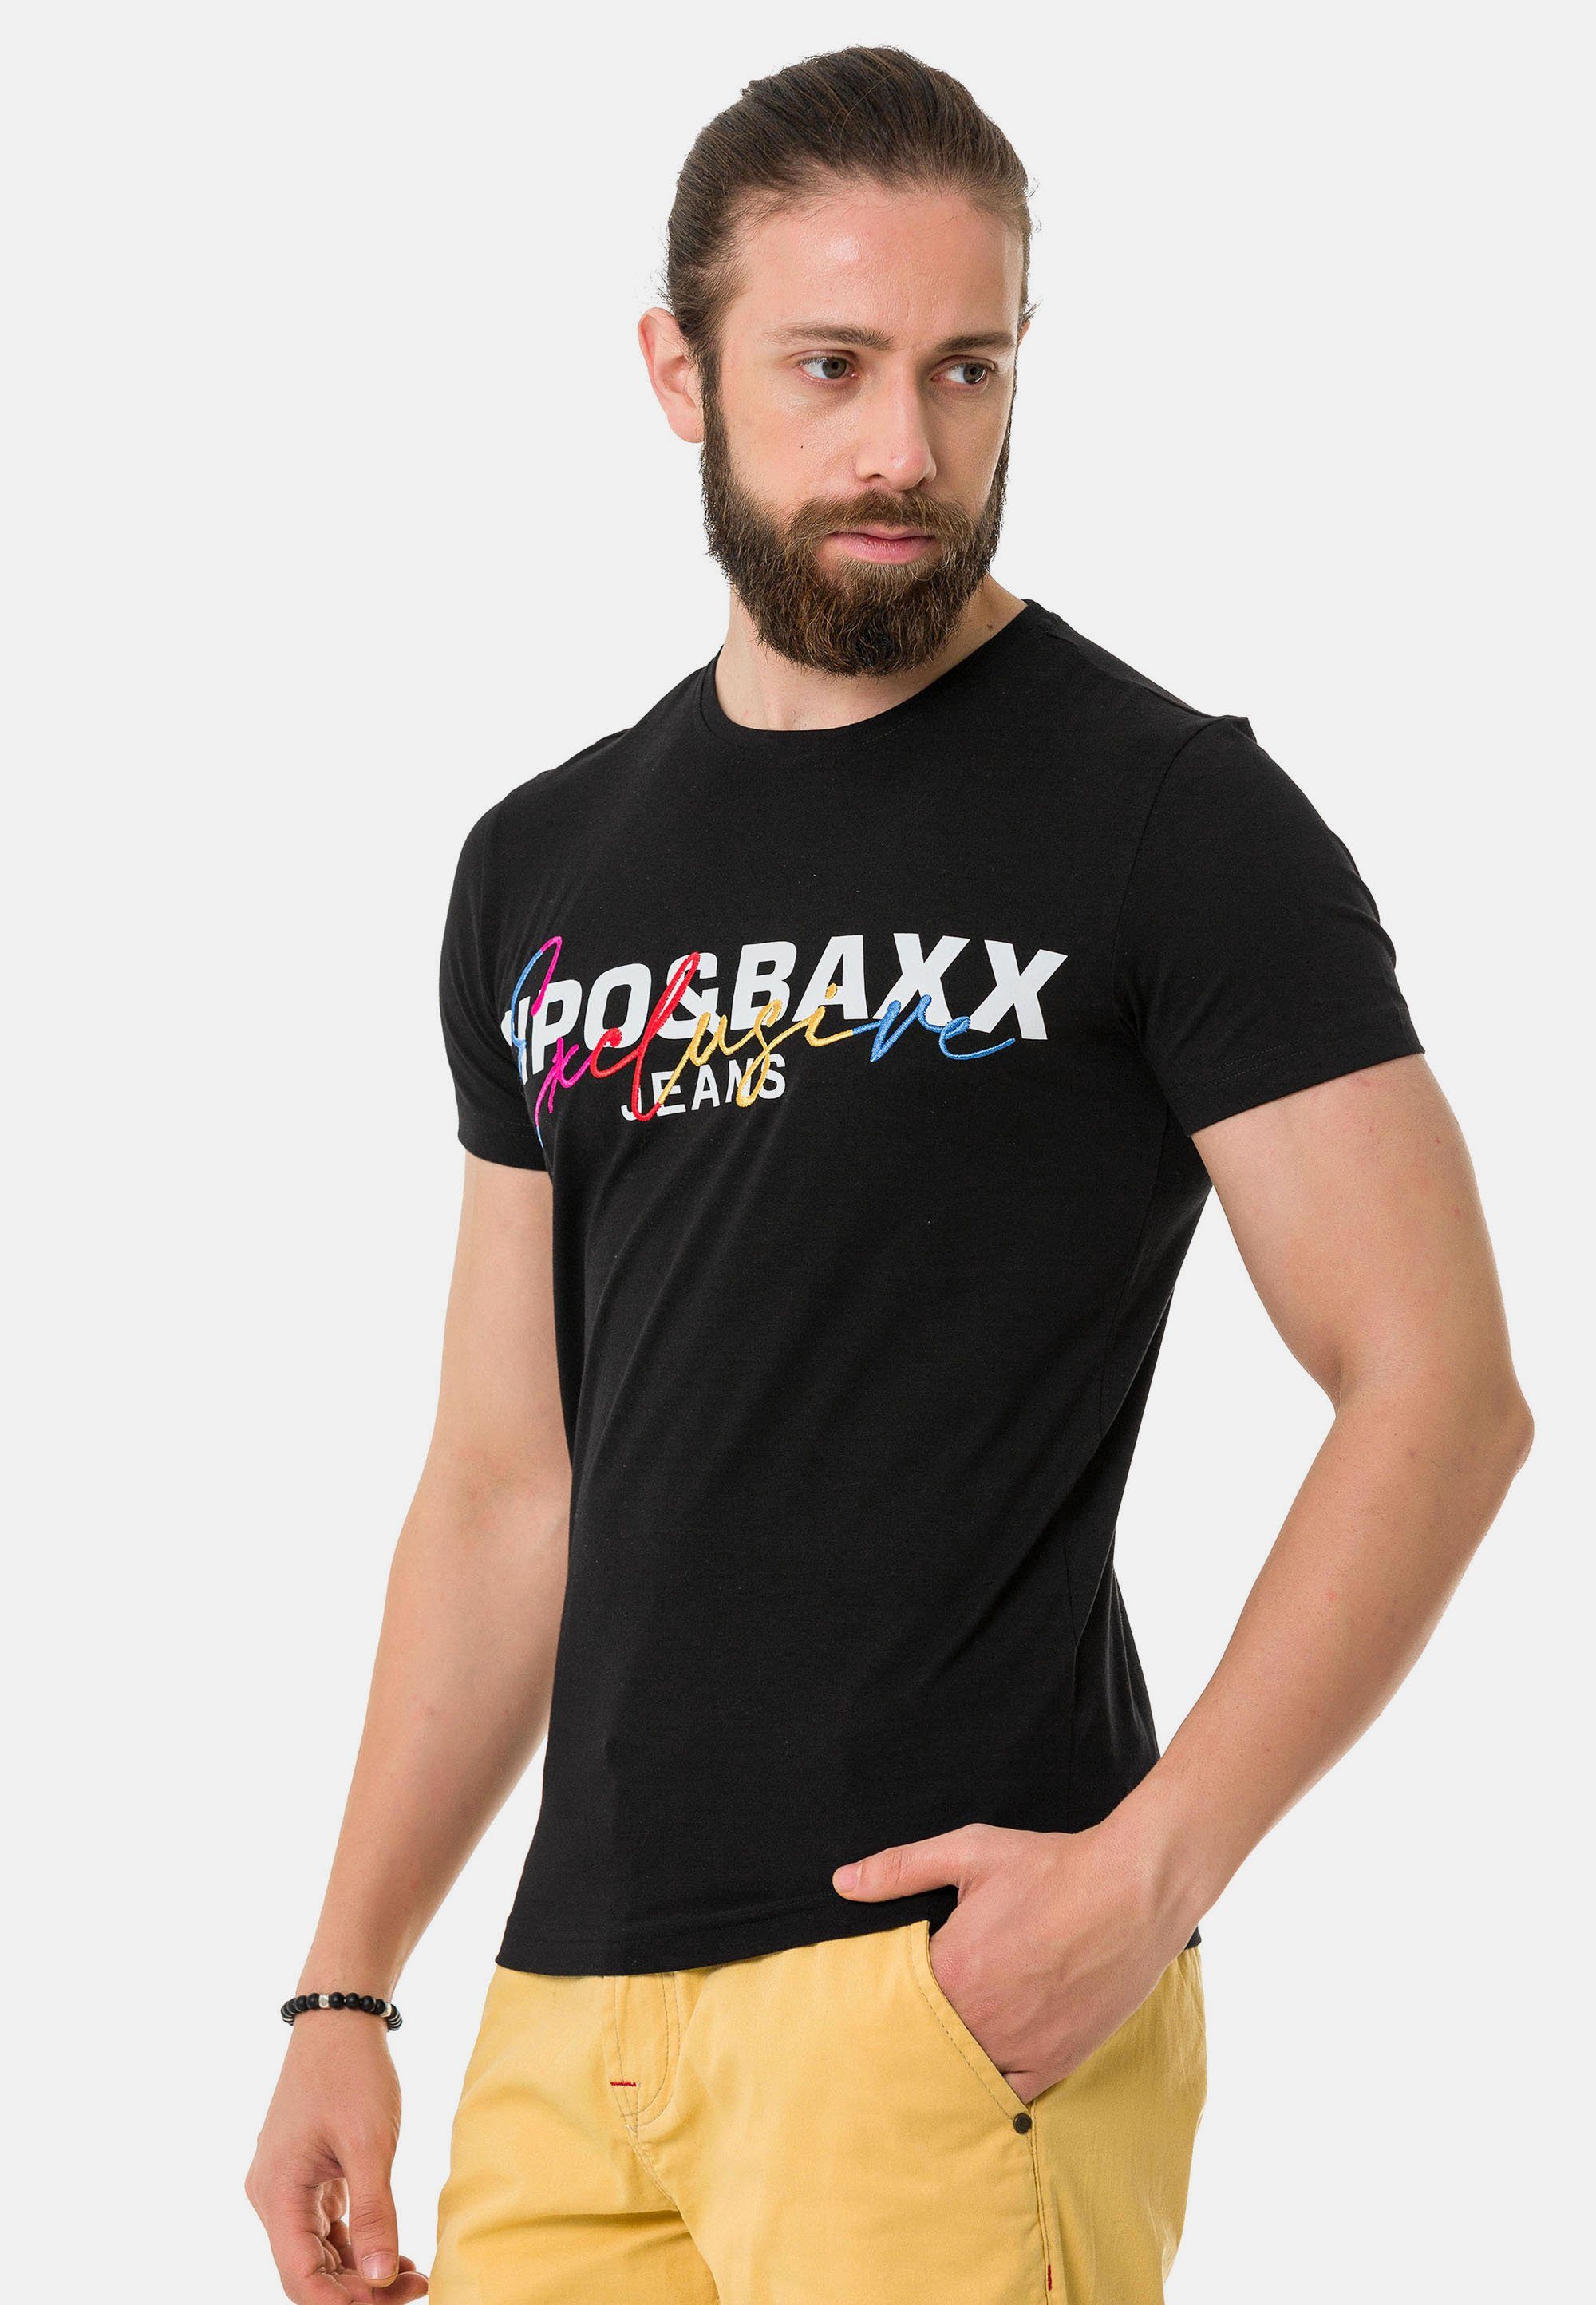 Baxx mit T-Shirt Markenprint schwarz & Cipo